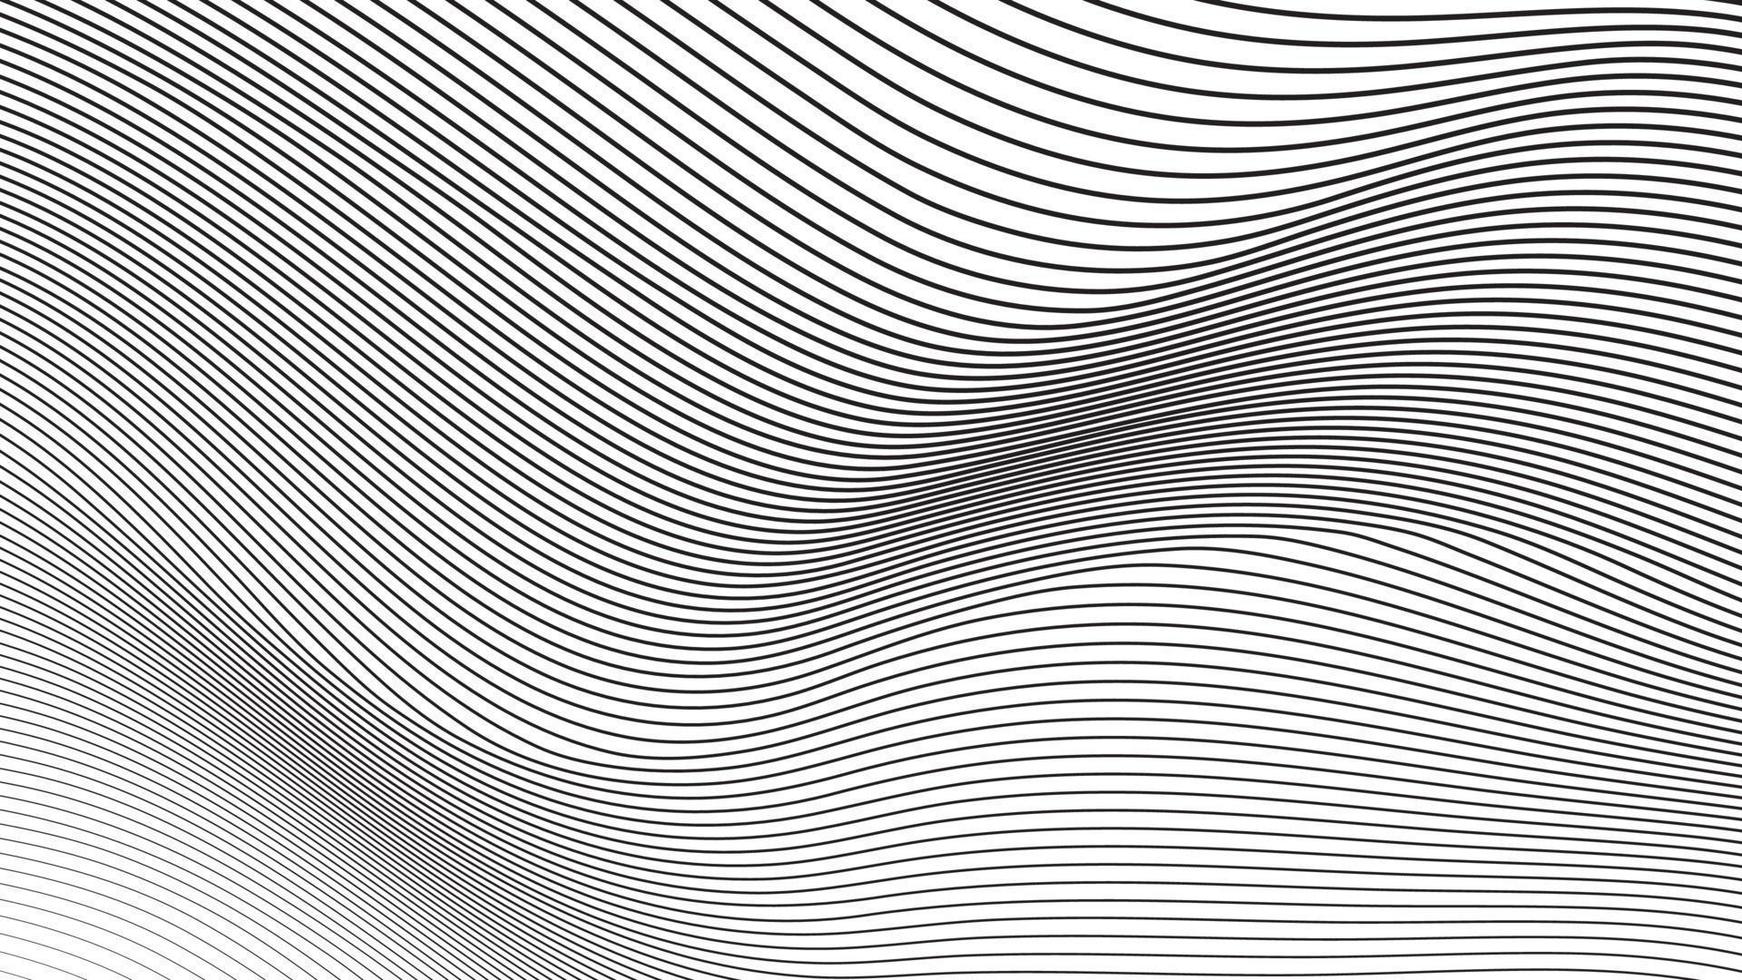 fondo de vector rayado diagonal deformado abstracto. vector curvo retorcido inclinado, textura de líneas onduladas.